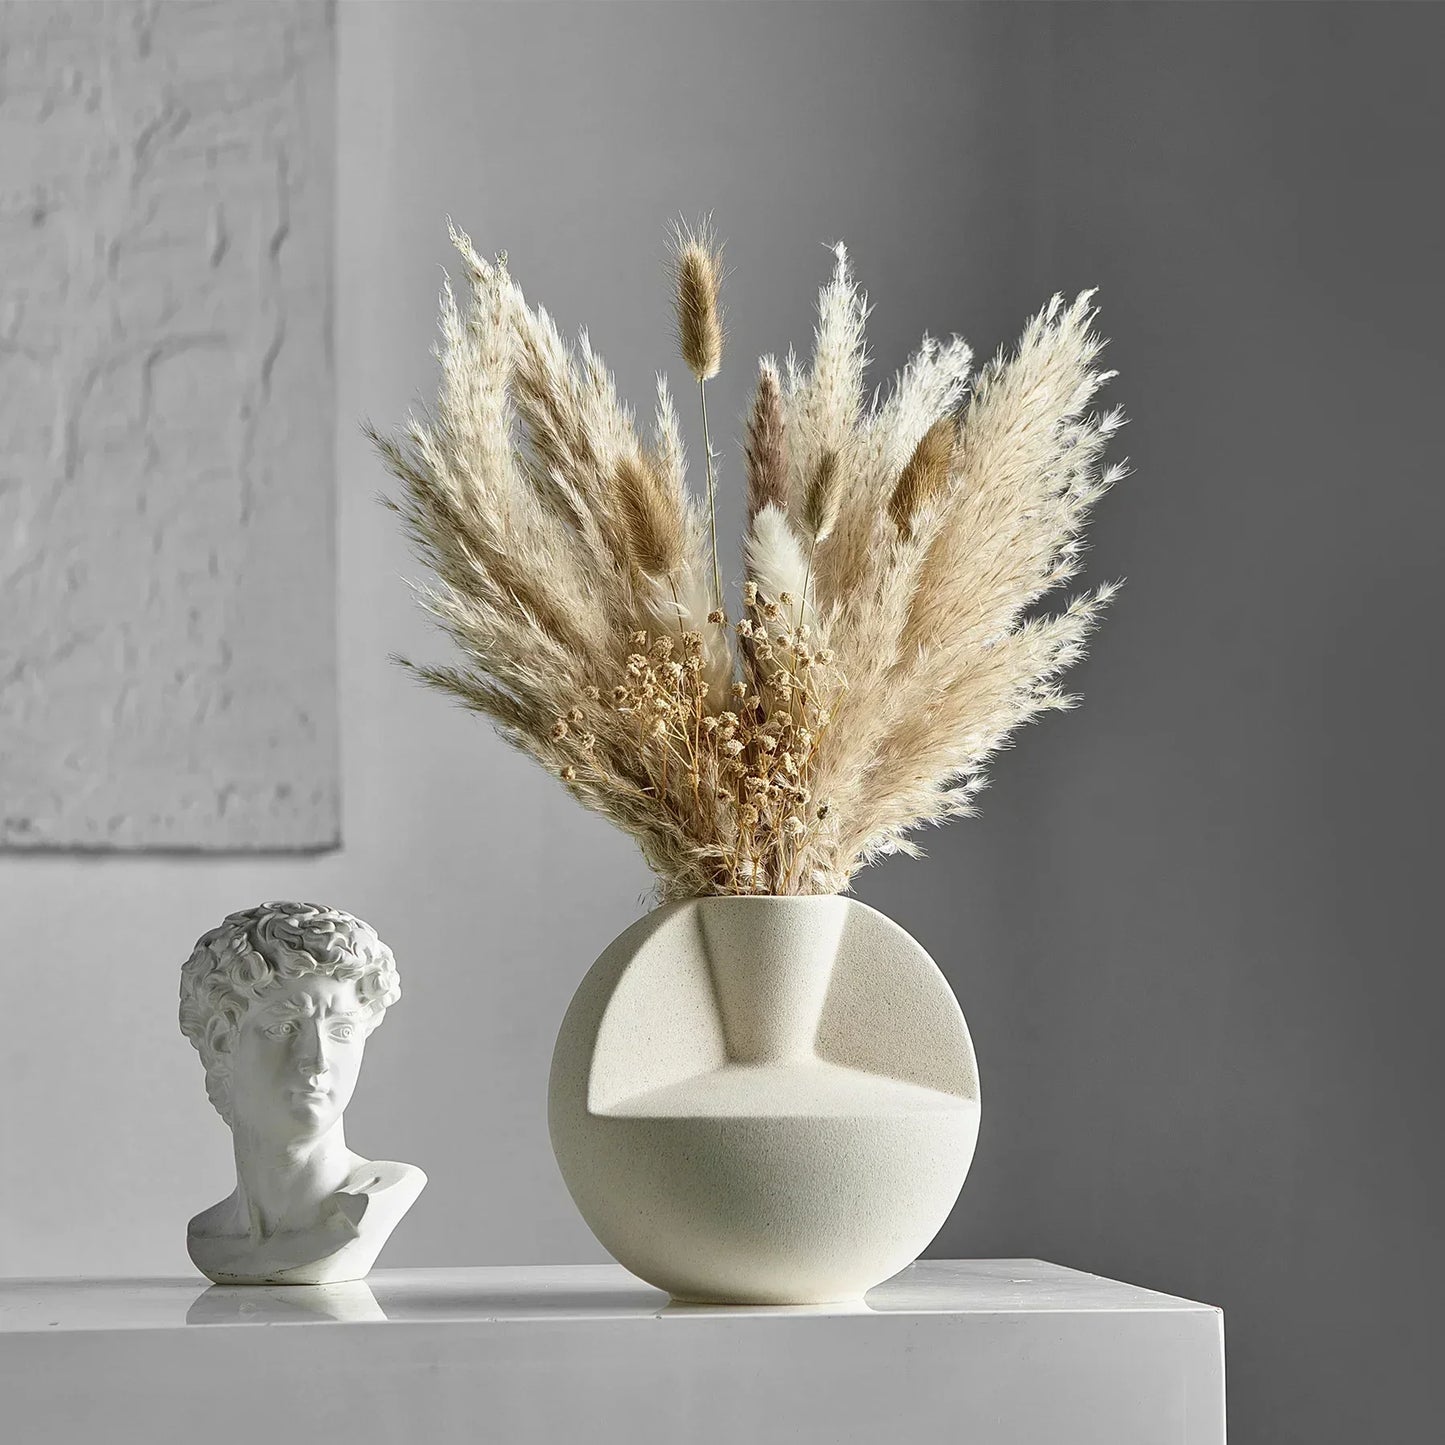 Home Decor Ceramic Vase for Living Room Decoration Accessories Modern Art Flower Arrangement Desktop Ornaments Porcelain Crafts